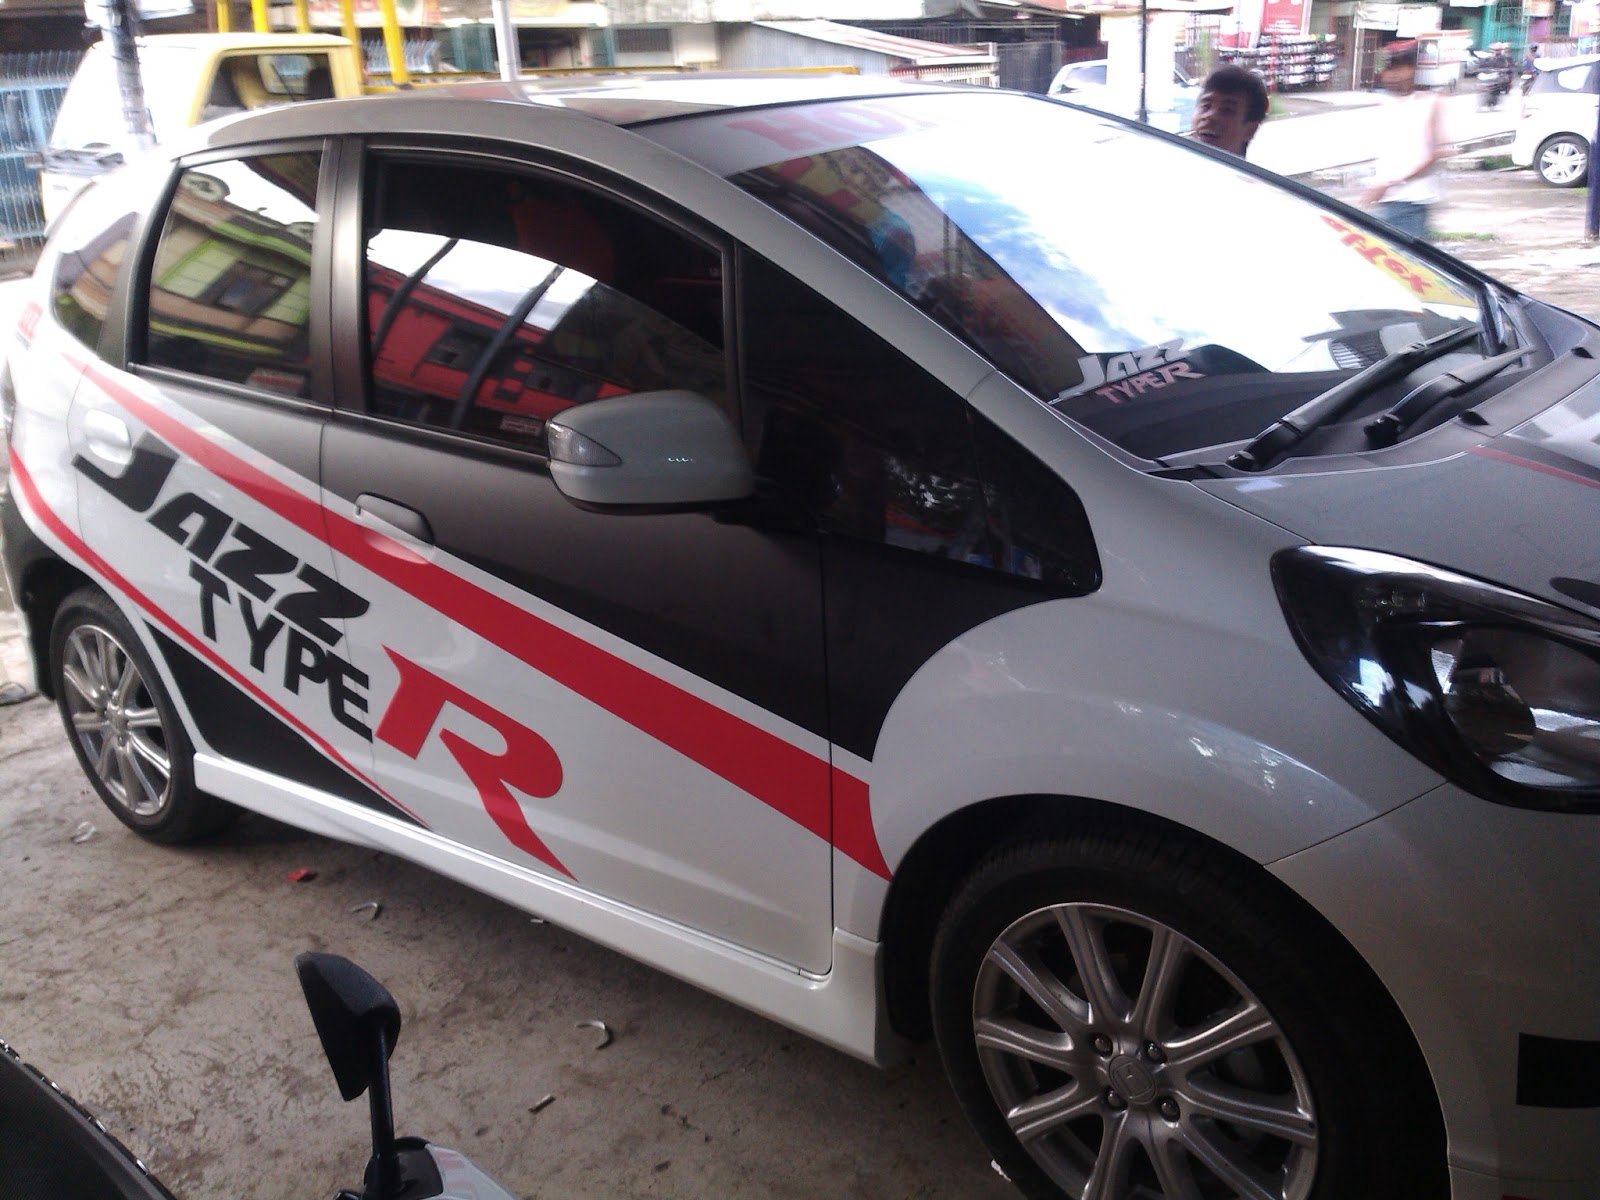 61 Gambar Modifikasi Mobil Bekas Makassar Terkeren Daun Motor